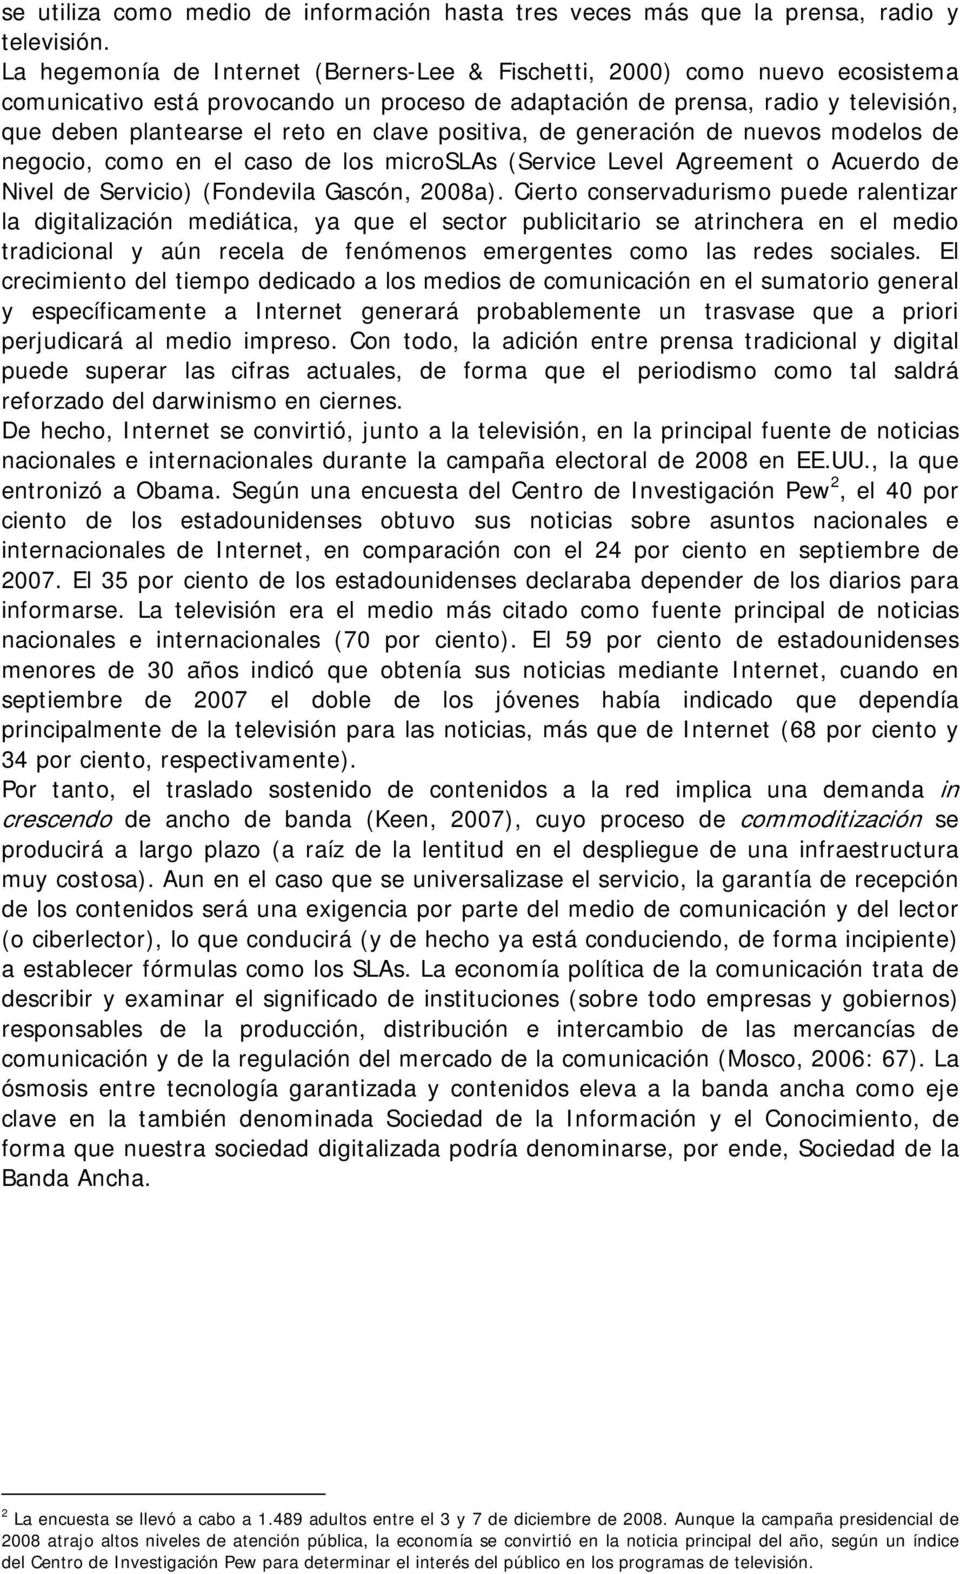 clave positiva, de generación de nuevos modelos de negocio, como en el caso de los microslas (Service Level Agreement o Acuerdo de Nivel de Servicio) (Fondevila Gascón, 2008a).